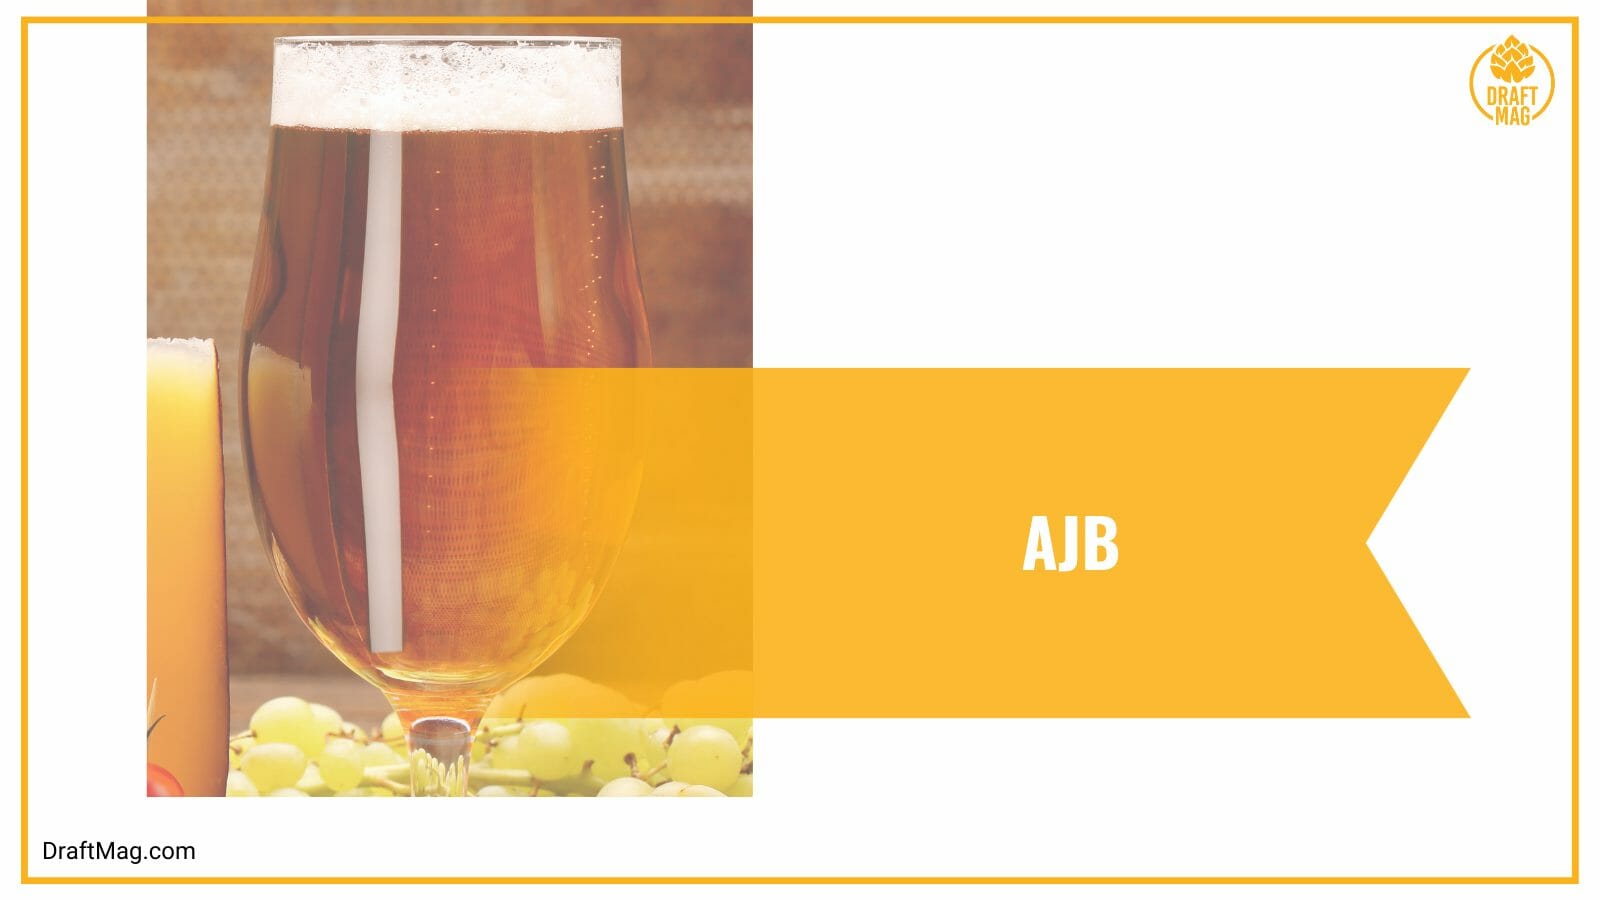 Ajb craft beer